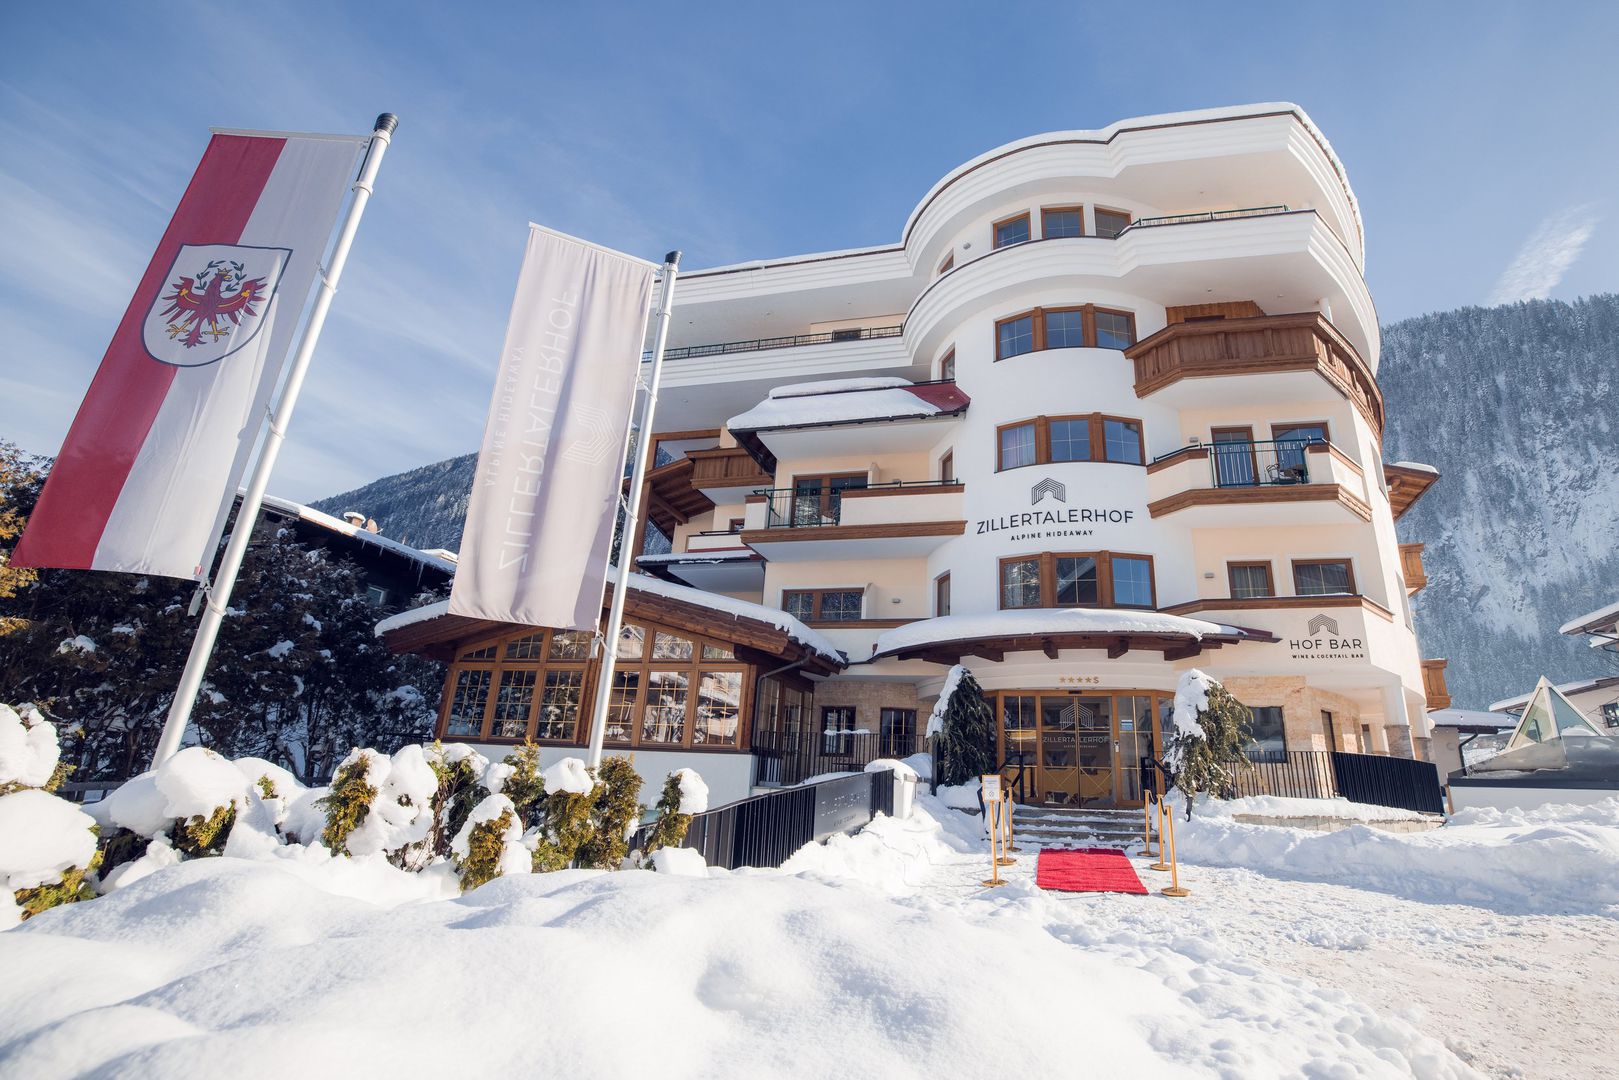 Det stilfulde 4-stjernede superior Zillertalerhof Alpine Hideaway ligger i skønne omgivelser, direkte i centrum af Mayrhofen. En skibus holder umiddelbart ved indkvarteringen og bringer gæsterne til Penken-banen (ca. 700 m fra indkvarteringen) eller til Ahorn-banen (ca. 1,1 km fra indkvarteringen). Løjpen og Zillertal-banens banegård ligger ca. 500 m fra indkvarteringen. Faciliteter Indkvarteringen har reception, Wi-Fi, elevator, morgenmadsrum, restaurant, bar, opholdsrum, bibliotek, vinkælder samt skidepot med støvlevarmer. Der er ligeledes gratis parkeringspladser (hvis ledig) samt en parkeringsgarage (mod betaling) og en ladestation til e-biler (mod betaling). Det omfattende og velholdte spa- og wellnessområde på ca. 2.000 m² har helårligt opvarmet indendørs- og udendørs pool, finsk sauna, øko-urte sauna og infrarød-sauna, dampbad, hvilezone med klangbrønd, opvarmede hvilebænke og tebar med frugt, nødder og "detox"-vandstation. På indkvarteringen er der mulighed for massager og skønhedsbehandlinger (mod betaling). Der tilbydes af og til også yoga- og meditationsprogrammer (se oplysninger på indkvarteringen). Man får en rabatkupon til udvalgte massage- og skønhedsanvendelser (indtil kl. 16) til en værdi af 10 ? pr. fuldt betalende gæst (kan ikke overdrages og kan ikke indløses i kontanter). Hotellet kan prale af flere priser, bl.a. Årets hotel 2021 (Gault & Millau). Forplejning 1/2 pensionen PLUS, der allerede er inkluderet i prisen, består af righoldig morgenmadsbuffet bl.a. med skiftende daglige specialiteter som fx "Weißwurst" og "Brezen", eksotiske frugter og mousserende vin eller "tyrolsk bondemarked". Mellem kl. 14 og 16 er der dagligt eftermiddags-"jause" med frisk frugt, "Sweet-Candy" buffet og søde retter. Om aftenen er der en 5-retters gourmet-menu med salat og ostebord. Derudover afholdes der løbende temabuffeter samt galla- og grillaftener. Der er også mulighed for gluten- og laktosefrie, vegetariske men også veganske retter.